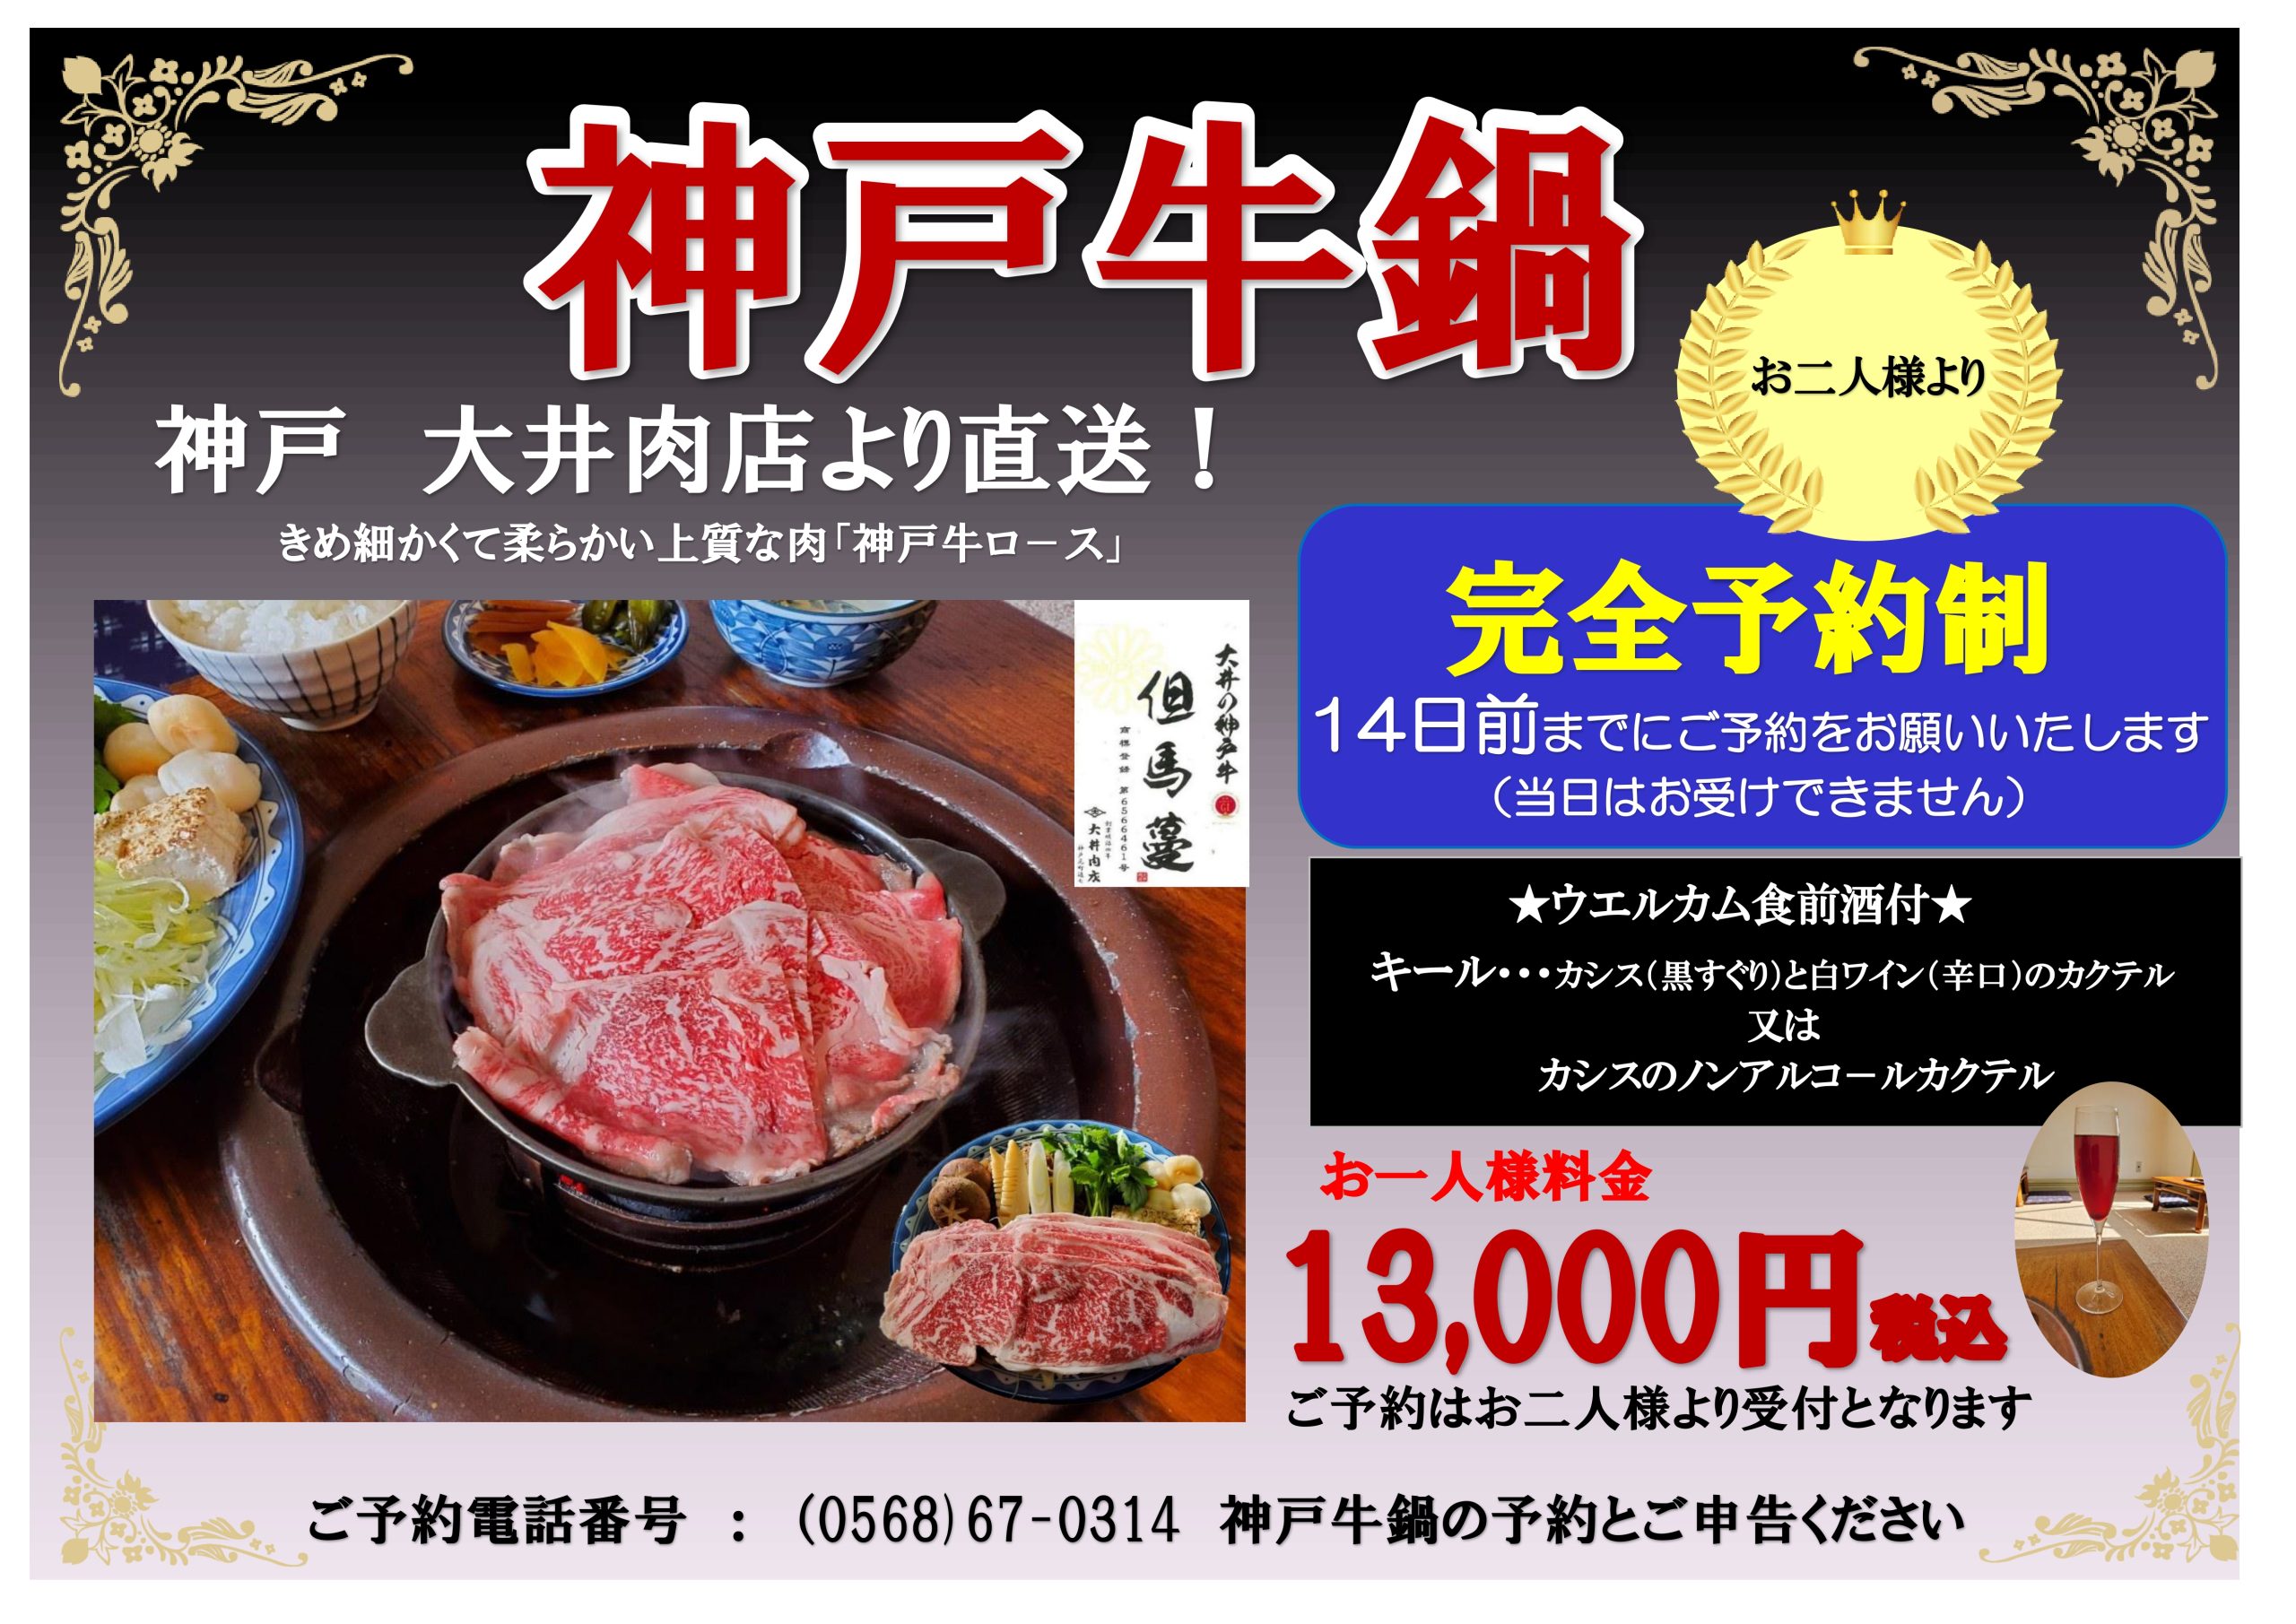 神戸牛鍋の期間限定販売について【3月4日より予約受付開始】【5月7日から11月30日までのご提供】　　　　　　　　　　　　　　　※ご利用規約をお読み下さい。